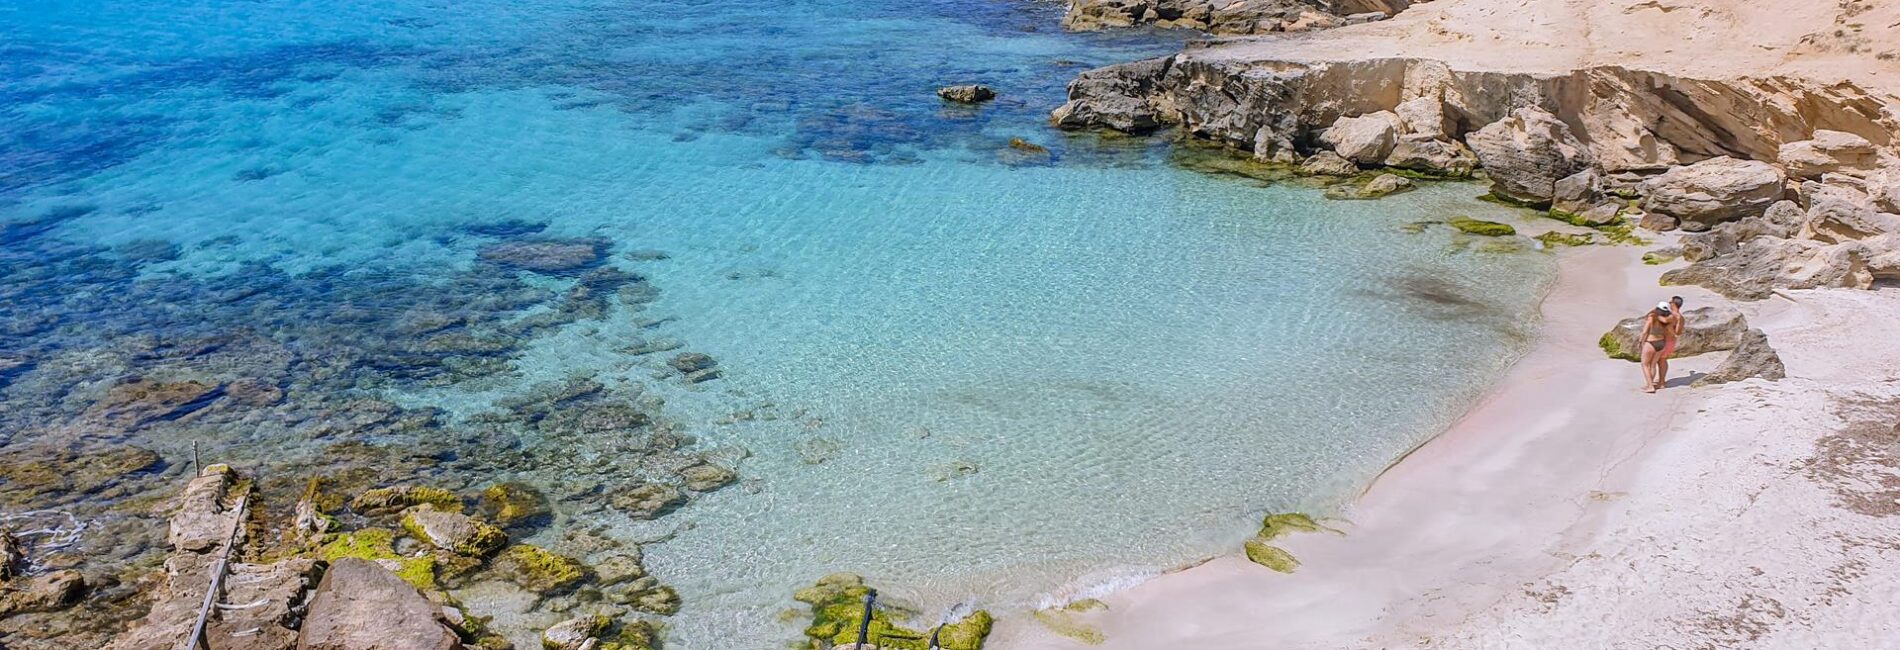 Co zobaczyć na Formenterze — top 10 miejsc na wyspie